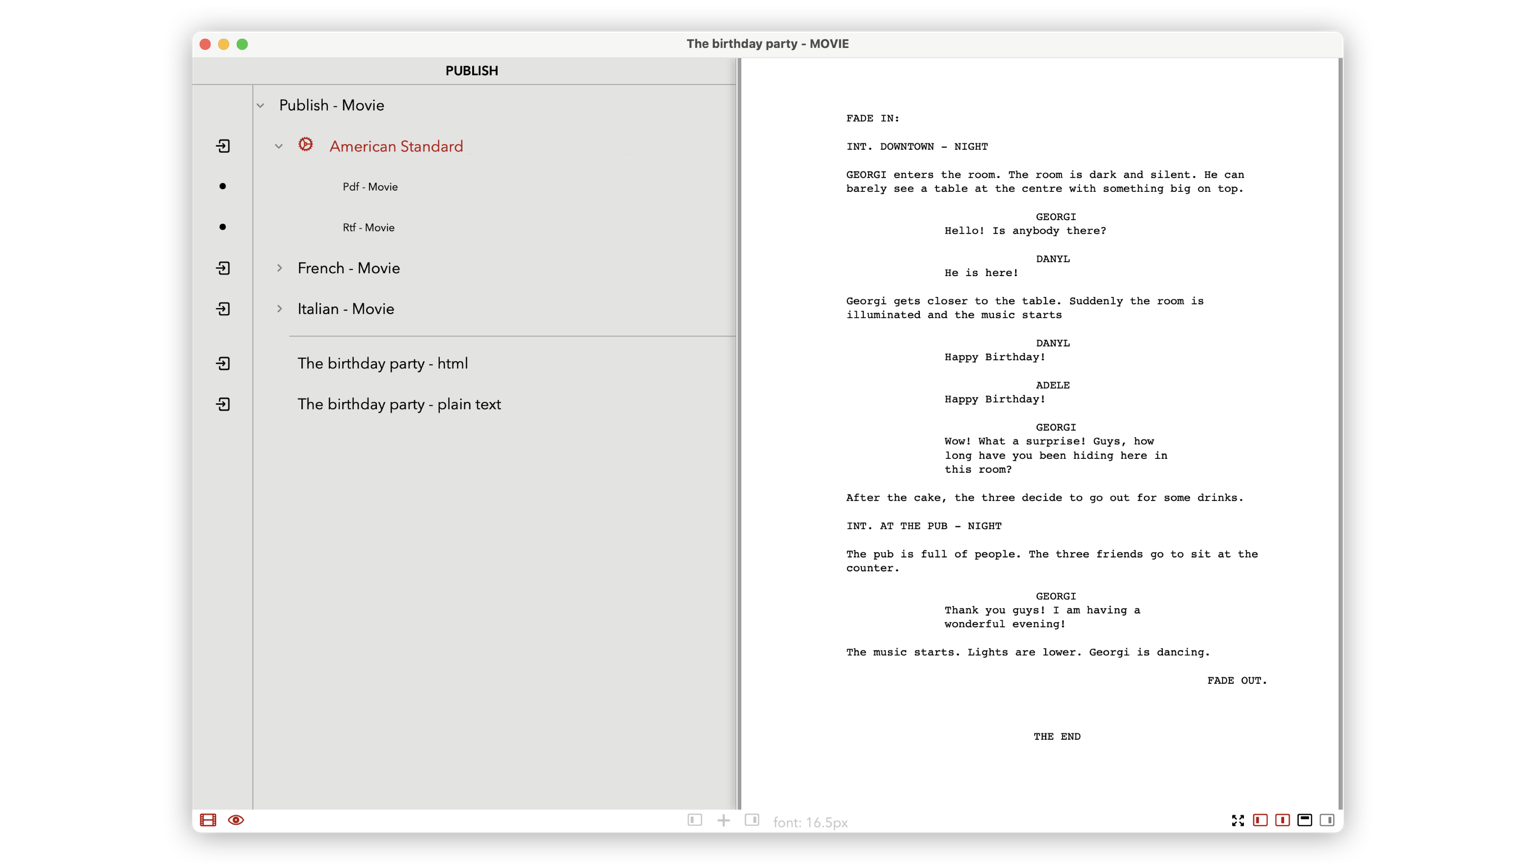 Ejemplo de guiones formateados según diferentes estándares de publicación utilizando TwelvePoint para iOS (iPad, iPhone y iPod touch)